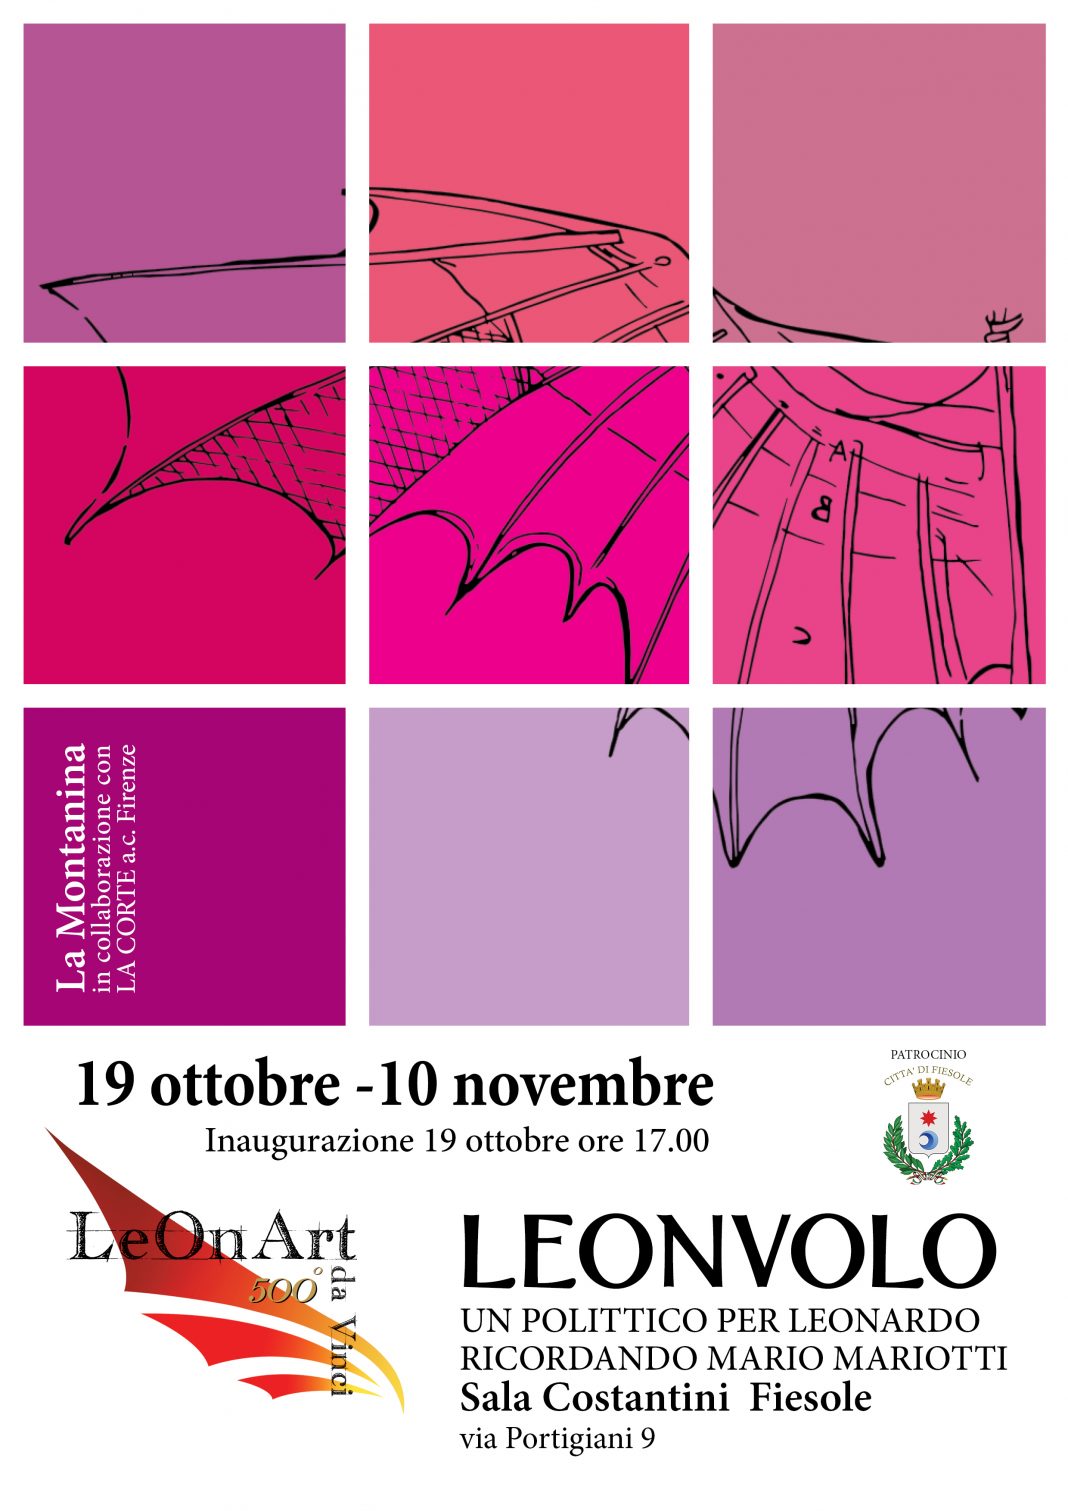 LeonVolo. Un polittico per Leonardo ricordando Mario Mariottihttps://www.exibart.com/repository/media/2019/10/Locandina-LeonVolo-DF-1068x1511.jpg